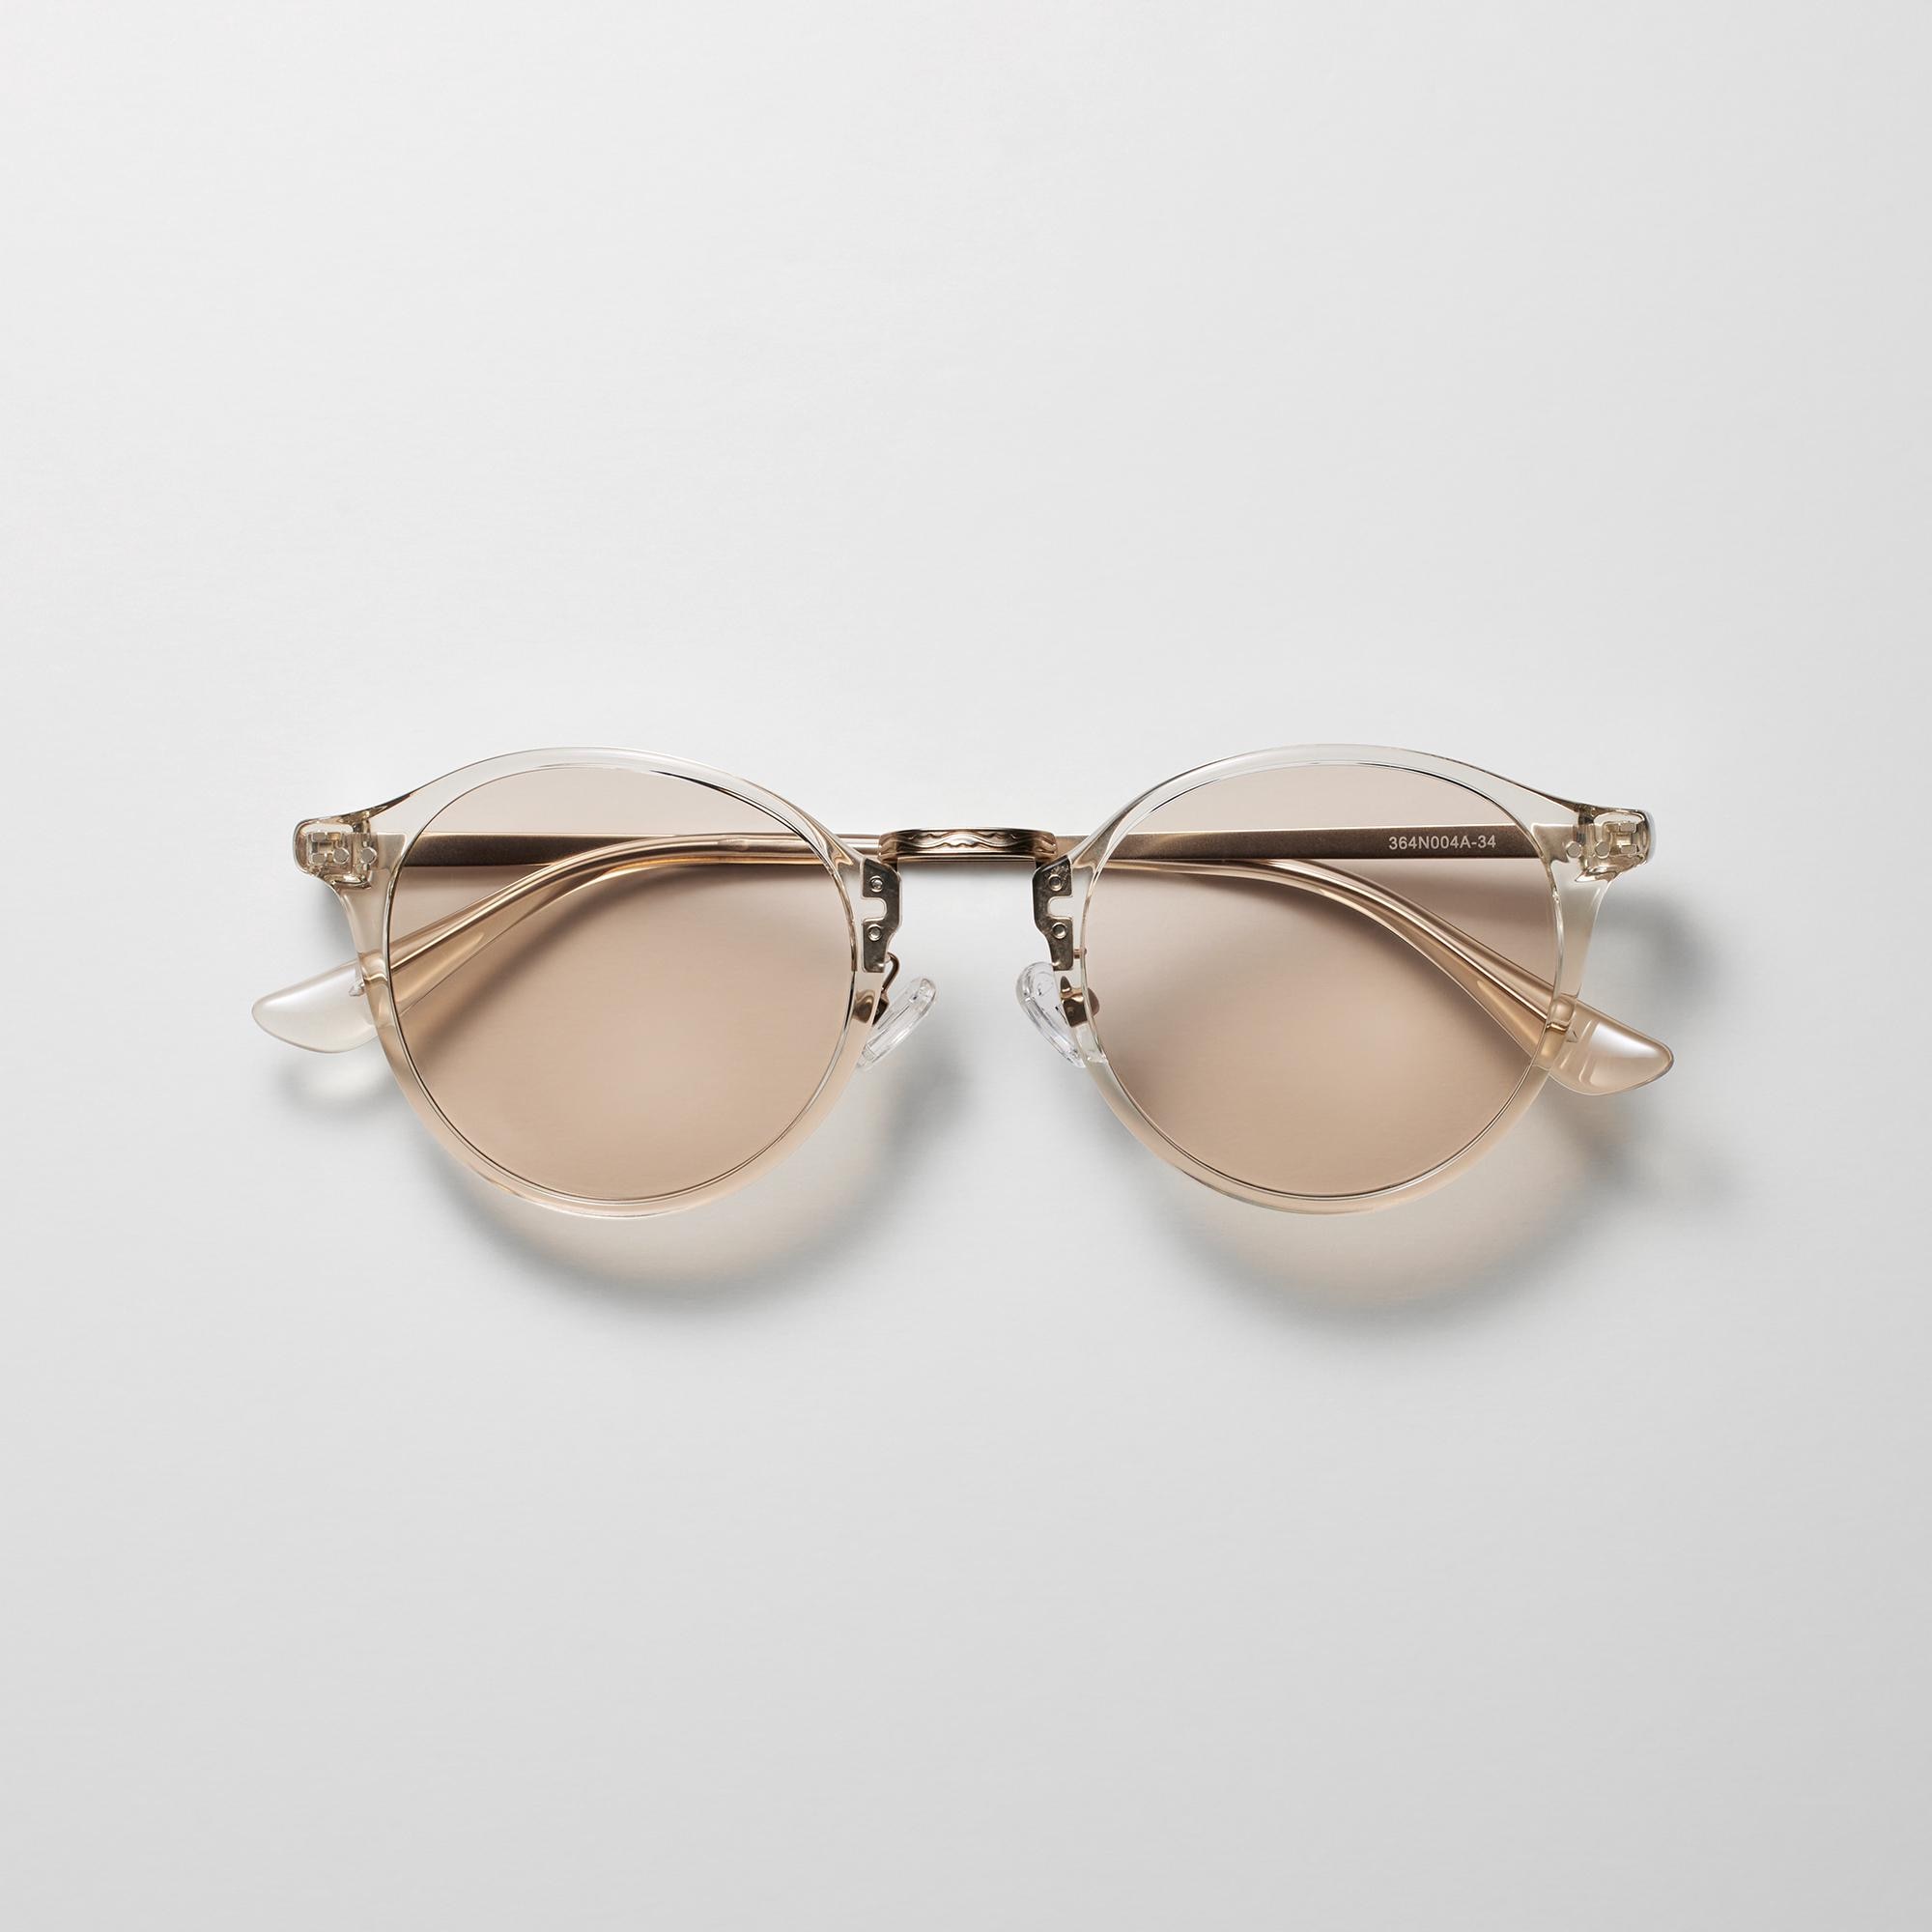 Boston Combination Sunglasses (Colored Lenses)